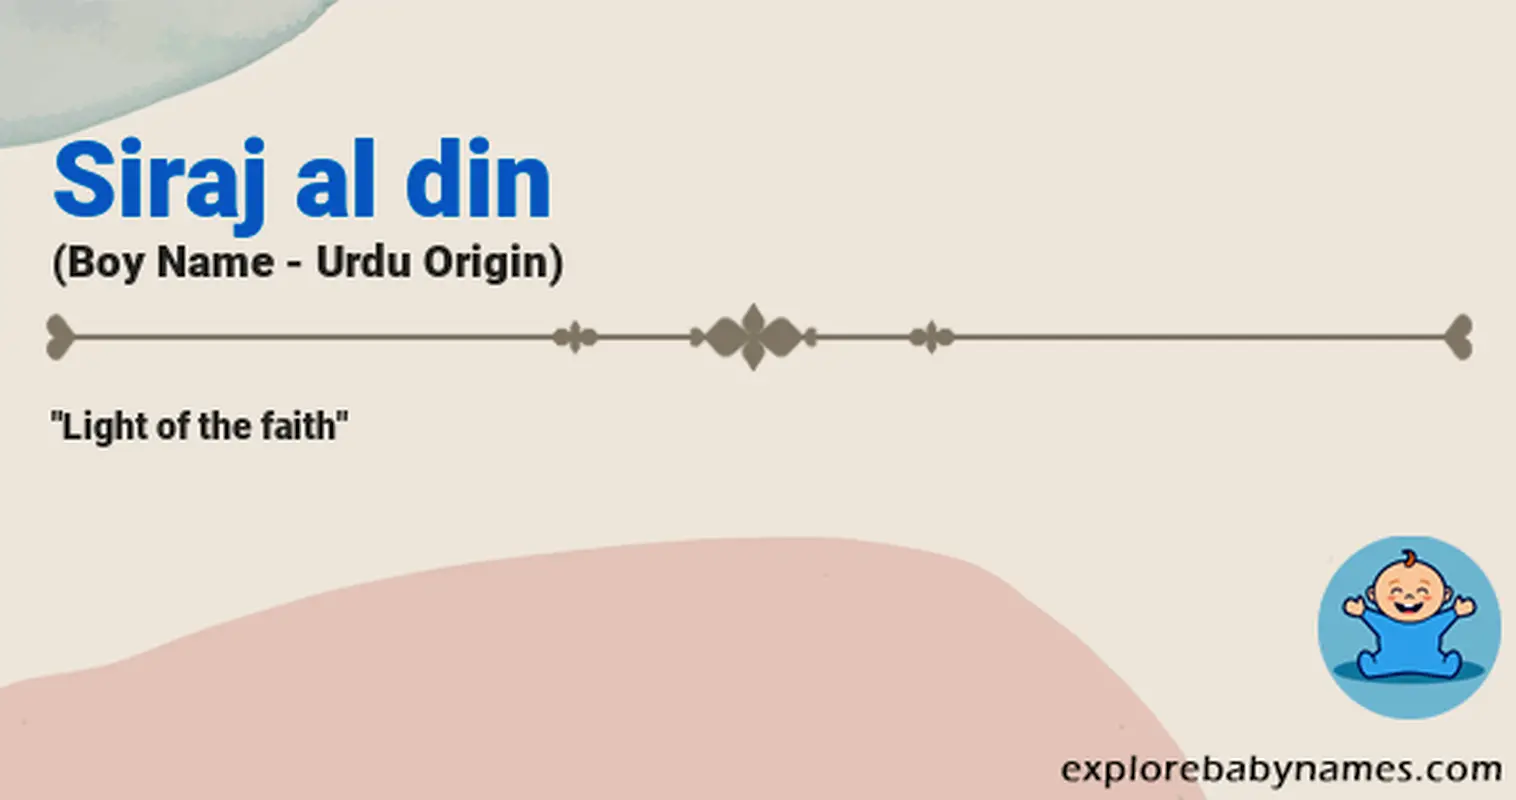 Meaning of Siraj al din